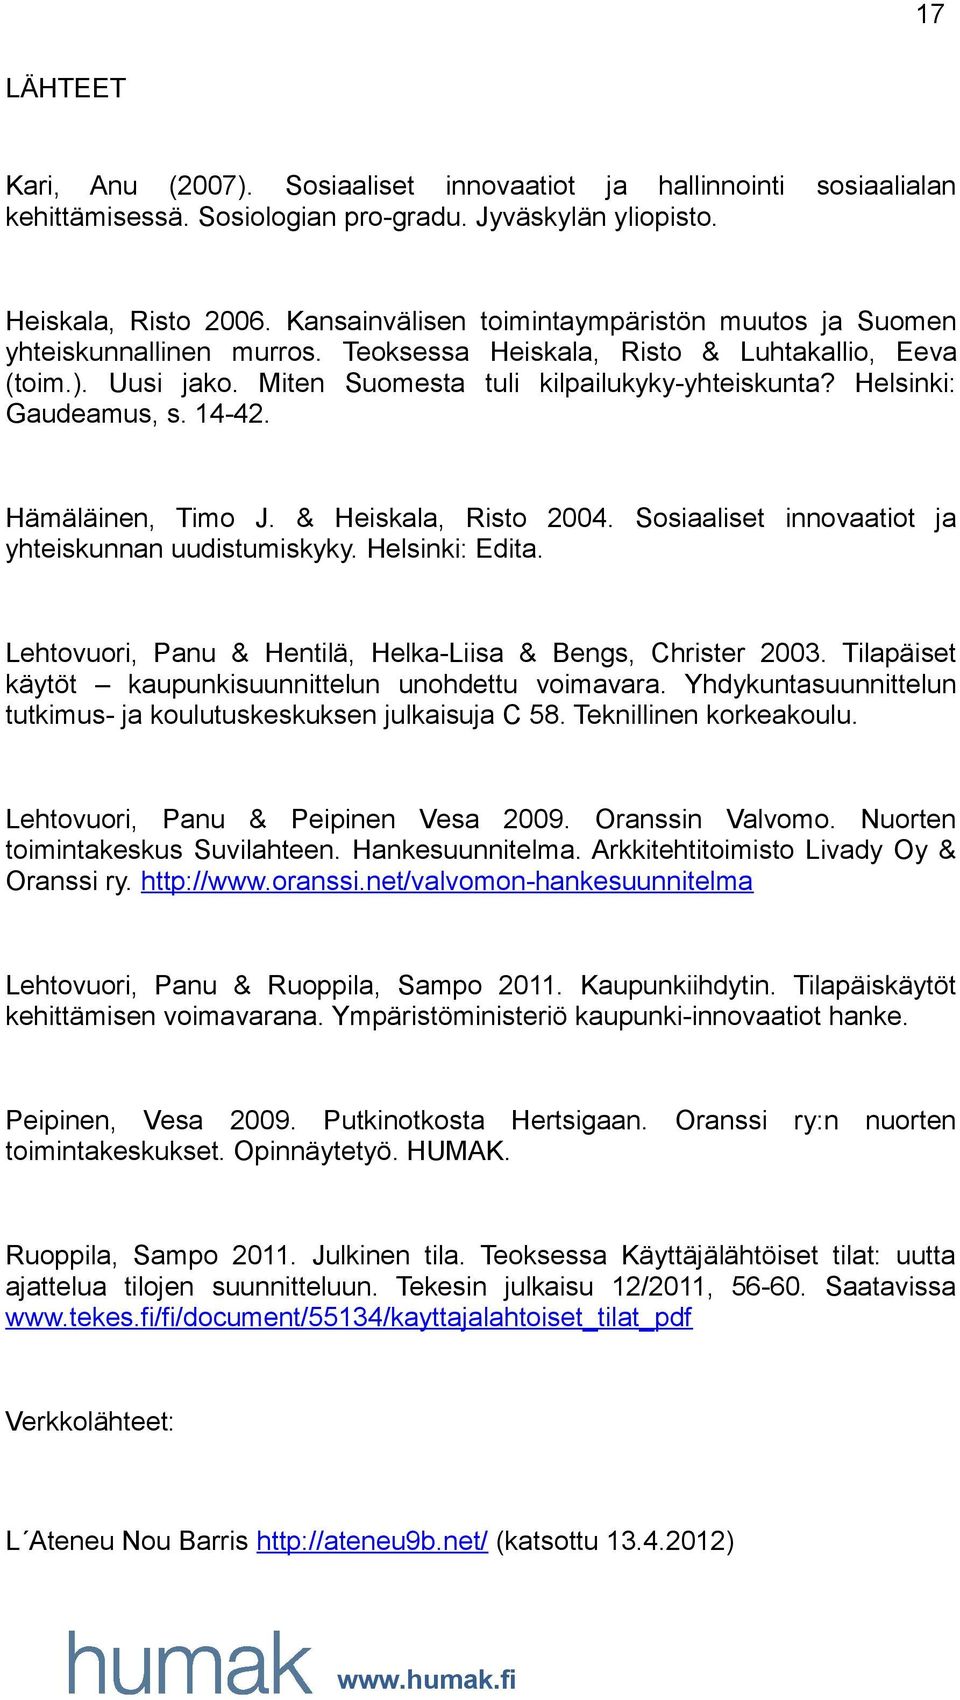 Helsinki: Gaudeamus, s. 14-42. Hämäläinen, Timo J. & Heiskala, Risto 2004. Sosiaaliset innovaatiot ja yhteiskunnan uudistumiskyky. Helsinki: Edita.